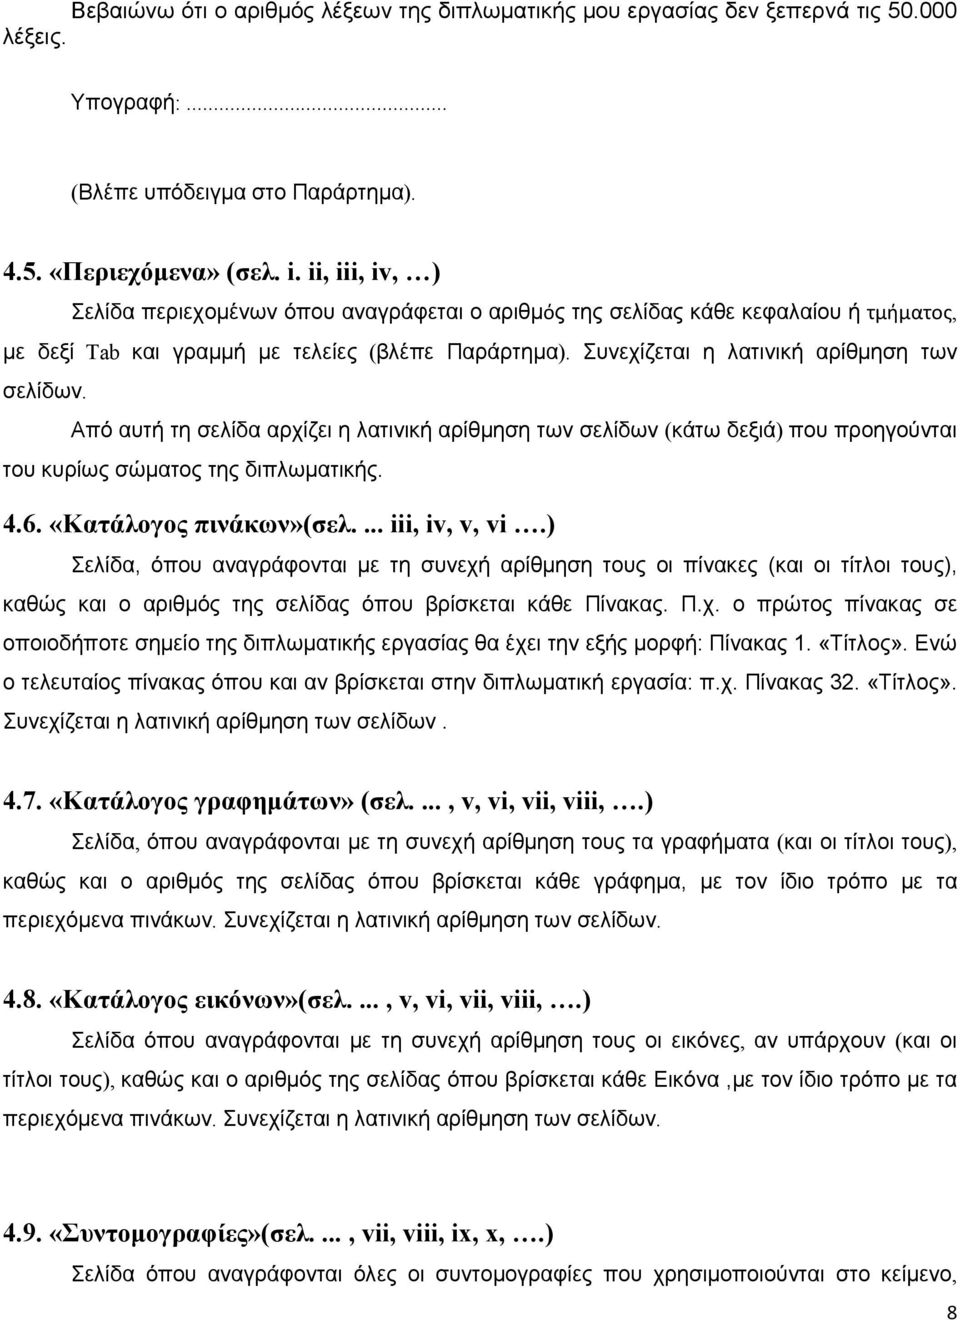 Από αυτή τη σελίδα αρχίζει η λατινική αρίθμηση των σελίδων (κάτω δεξιά) που προηγούνται του κυρίως σώματος της διπλωματικής. 4.6. «Κατάλογος πινάκων»(σελ.... iii, iv, v, vi.